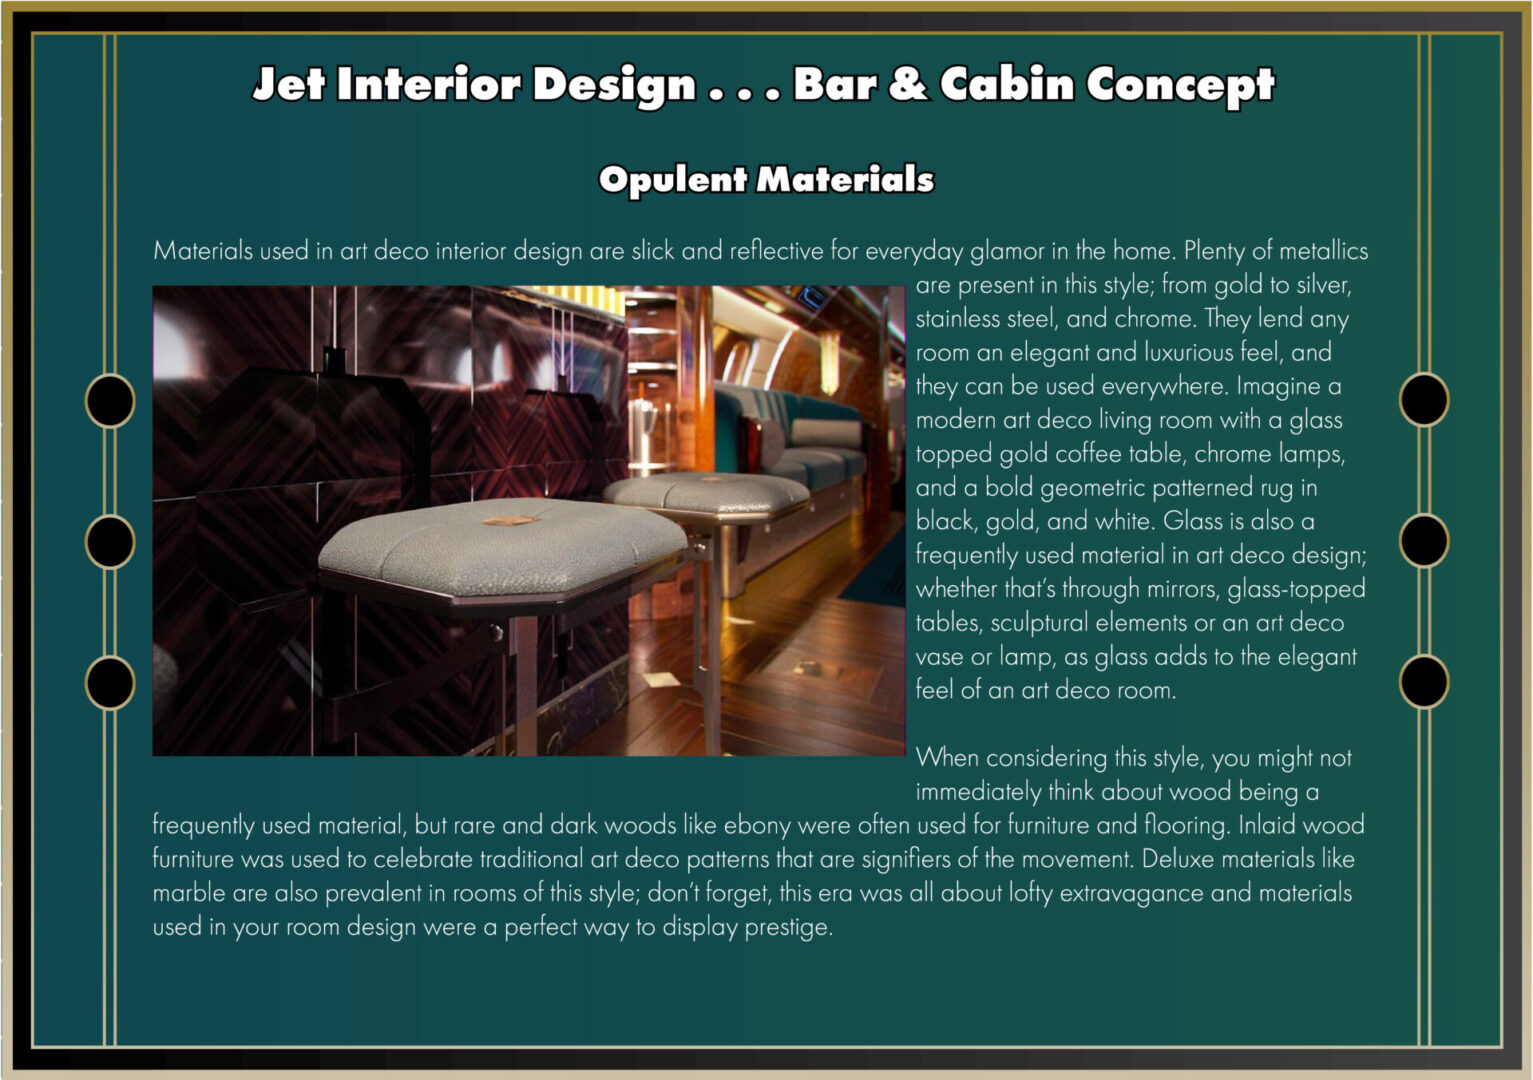 Jet Interior Design using Opulent Materials